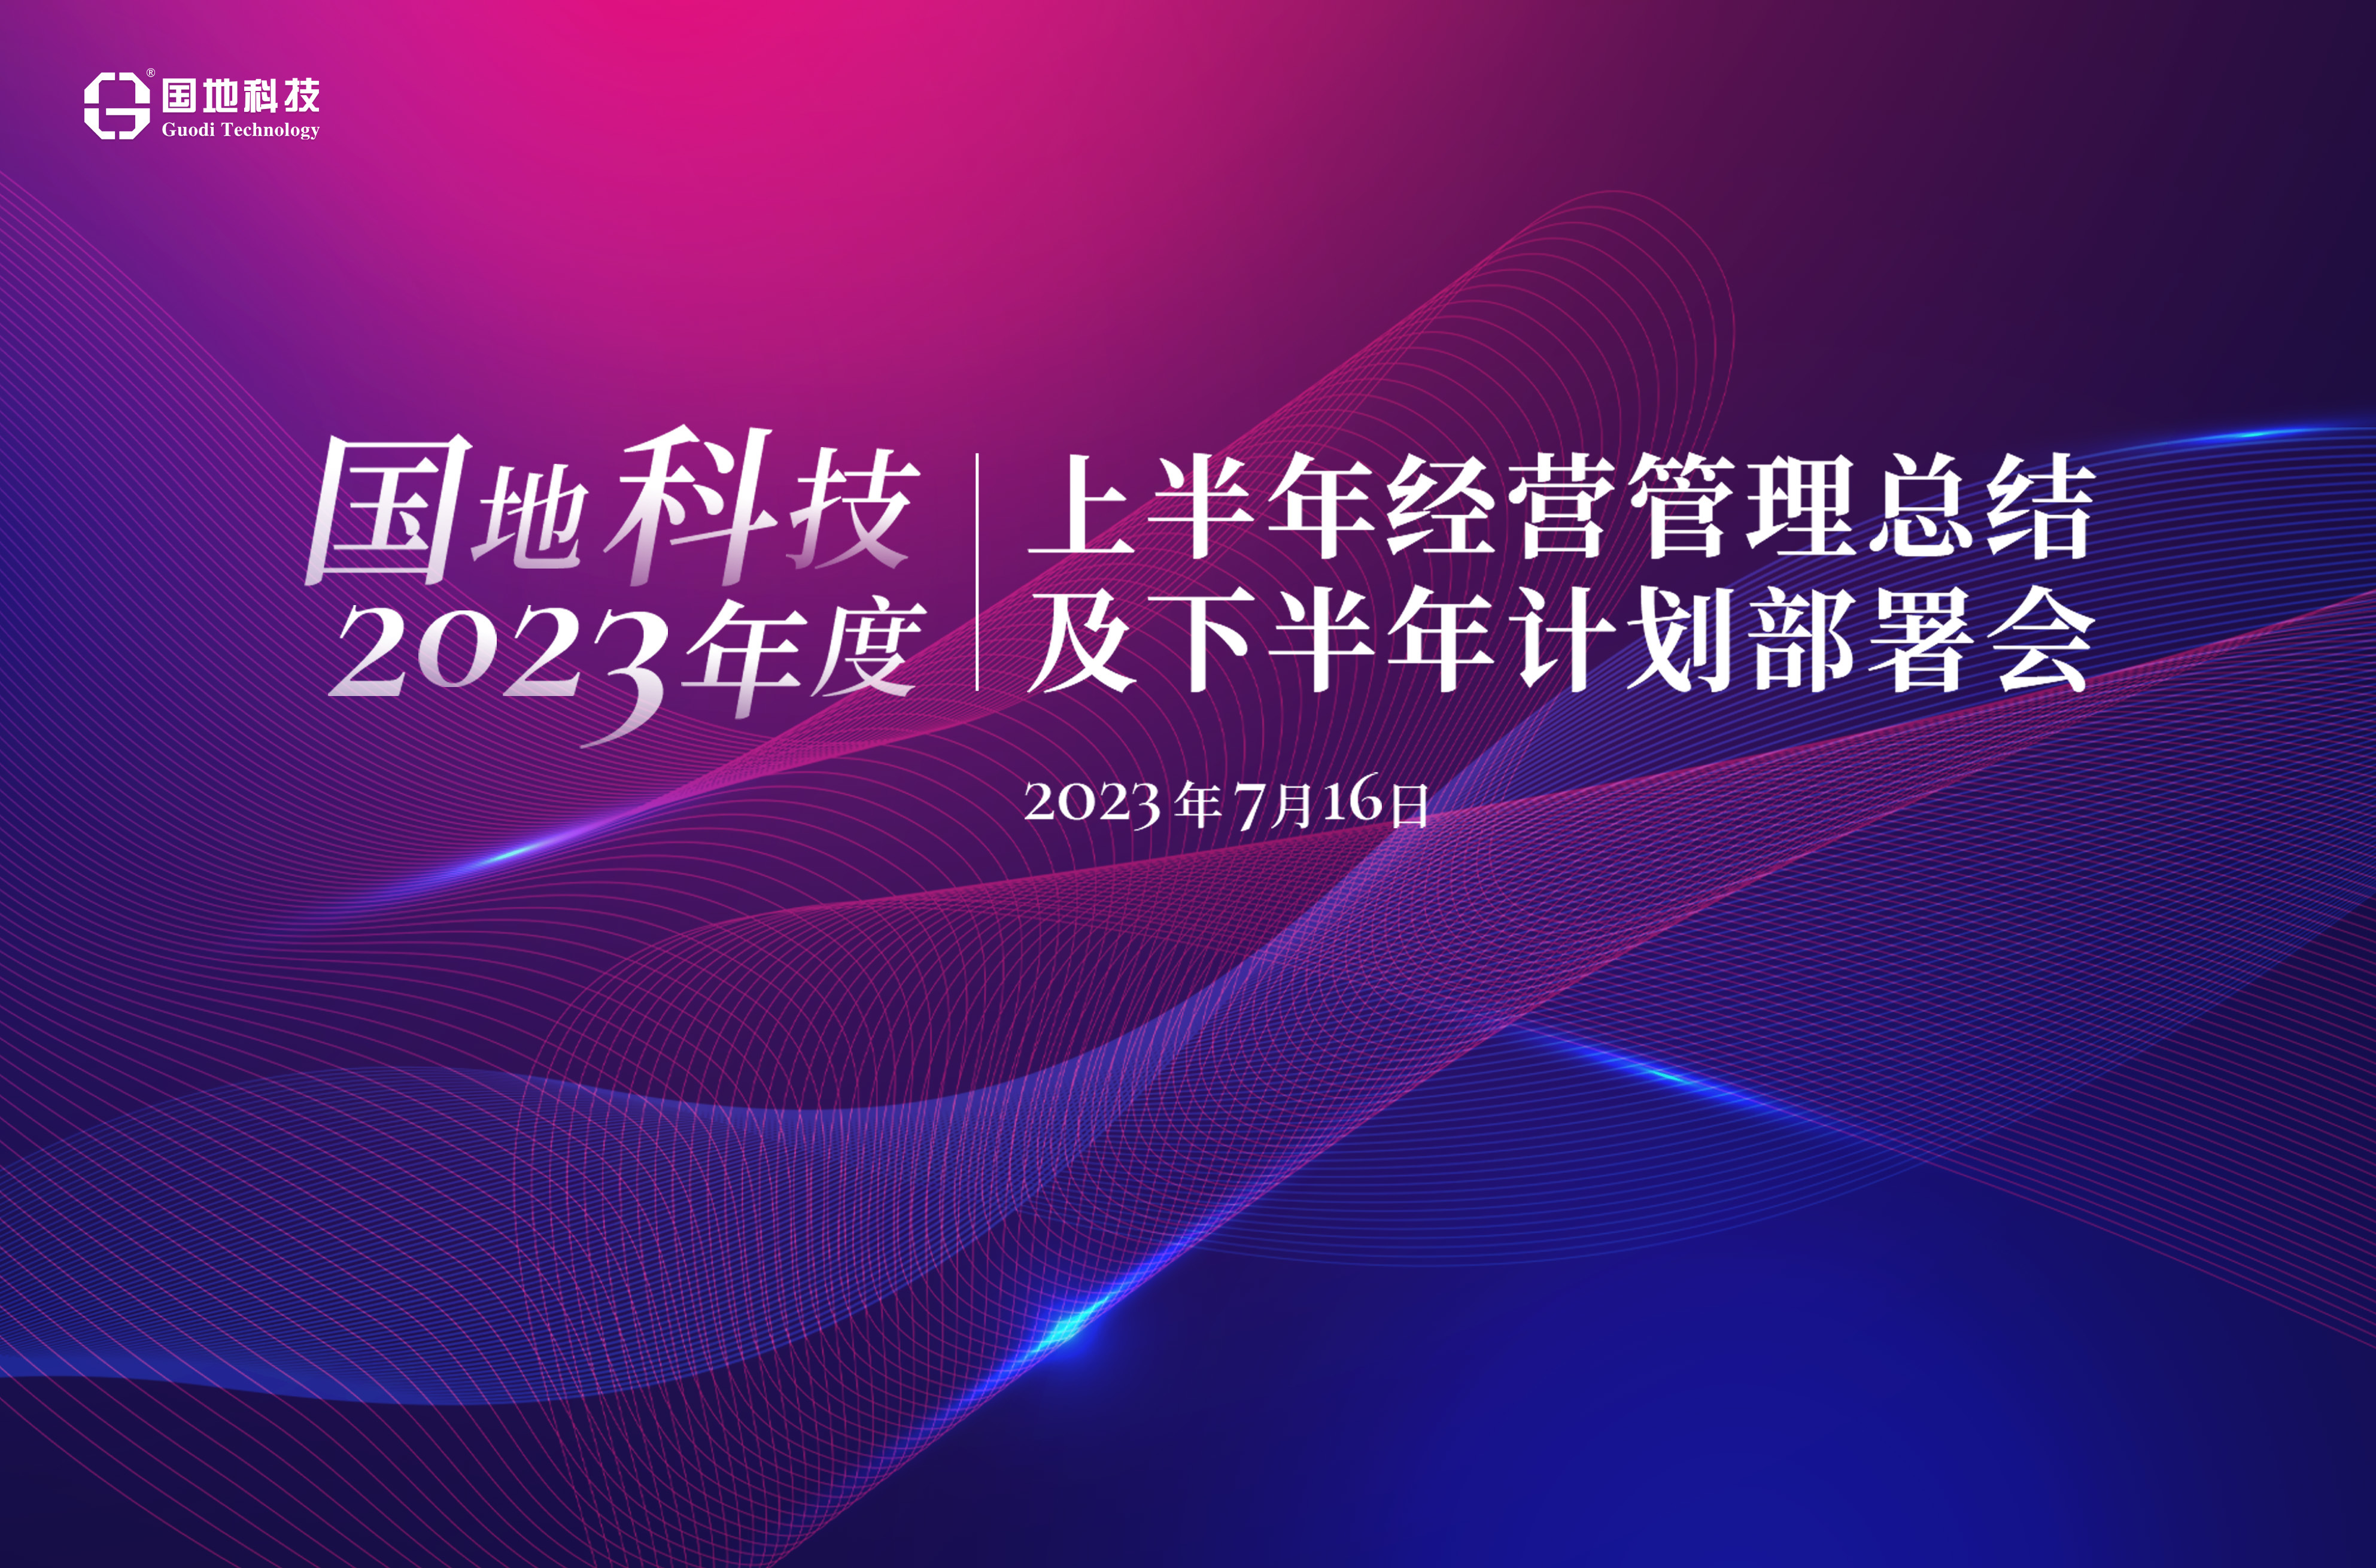 金沙casino娱乐场-(杭州)有限公司2023年上半年度经营管理总结部署会召开